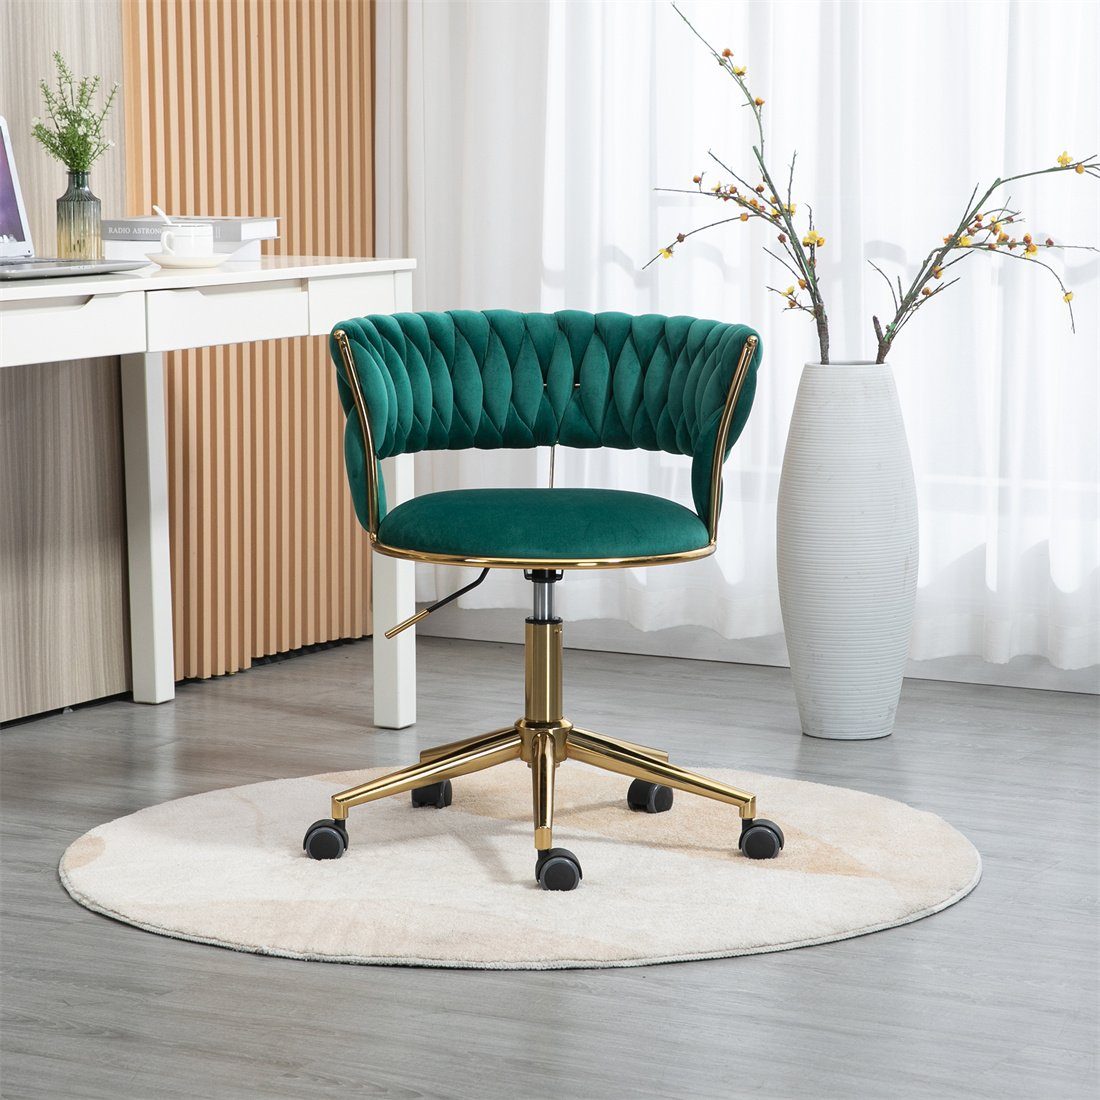 DÖRÖY Drehstuhl Home Chair,Kosmetikstuhl,Verstellbarer Office Computerstuhl,grün